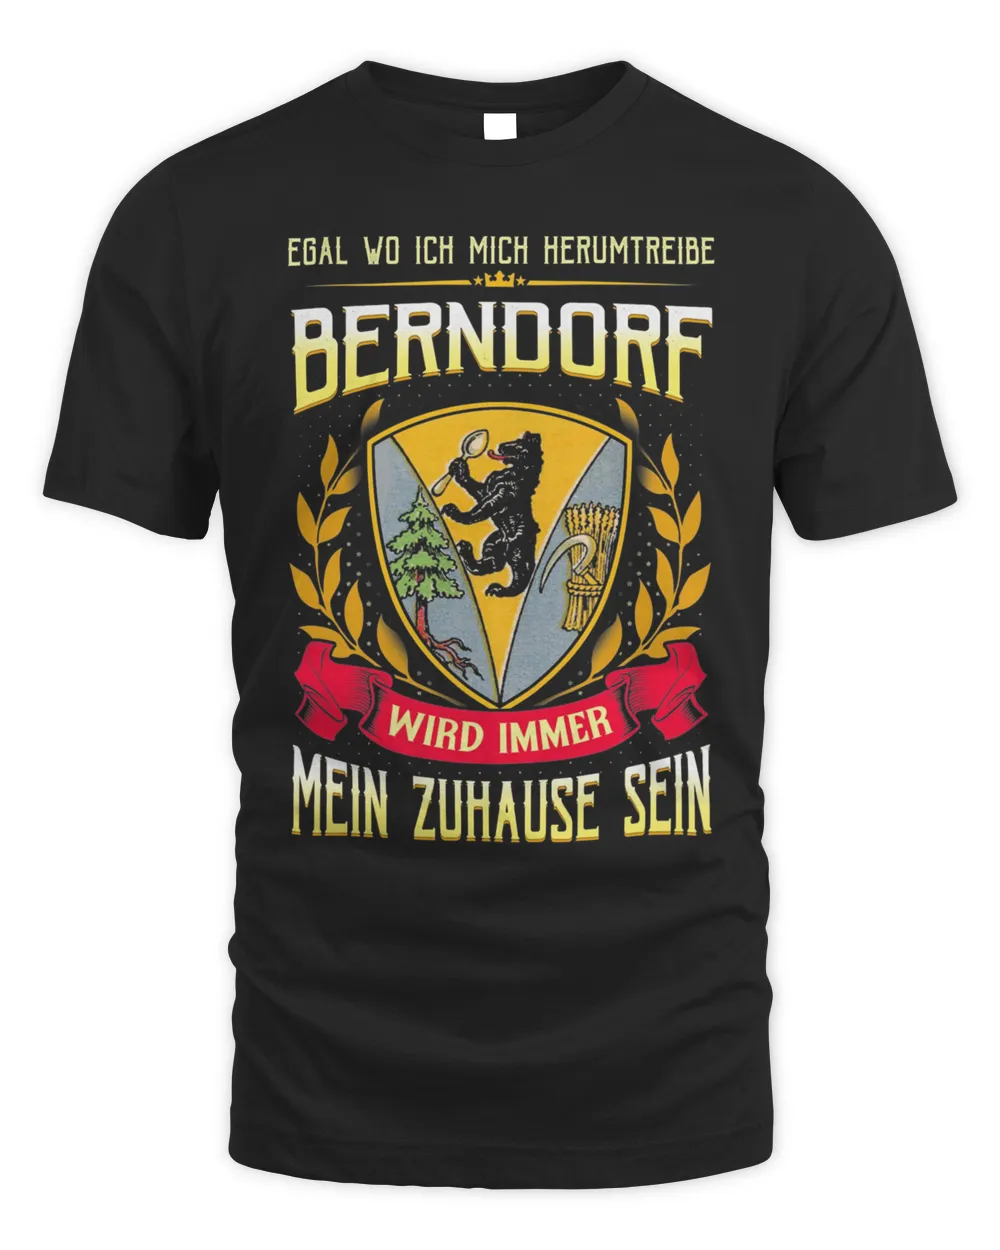 Egal Wo Ich Mich Herumtreibe Berndorf Wird Immer Mein Zuhause Sein Shirt